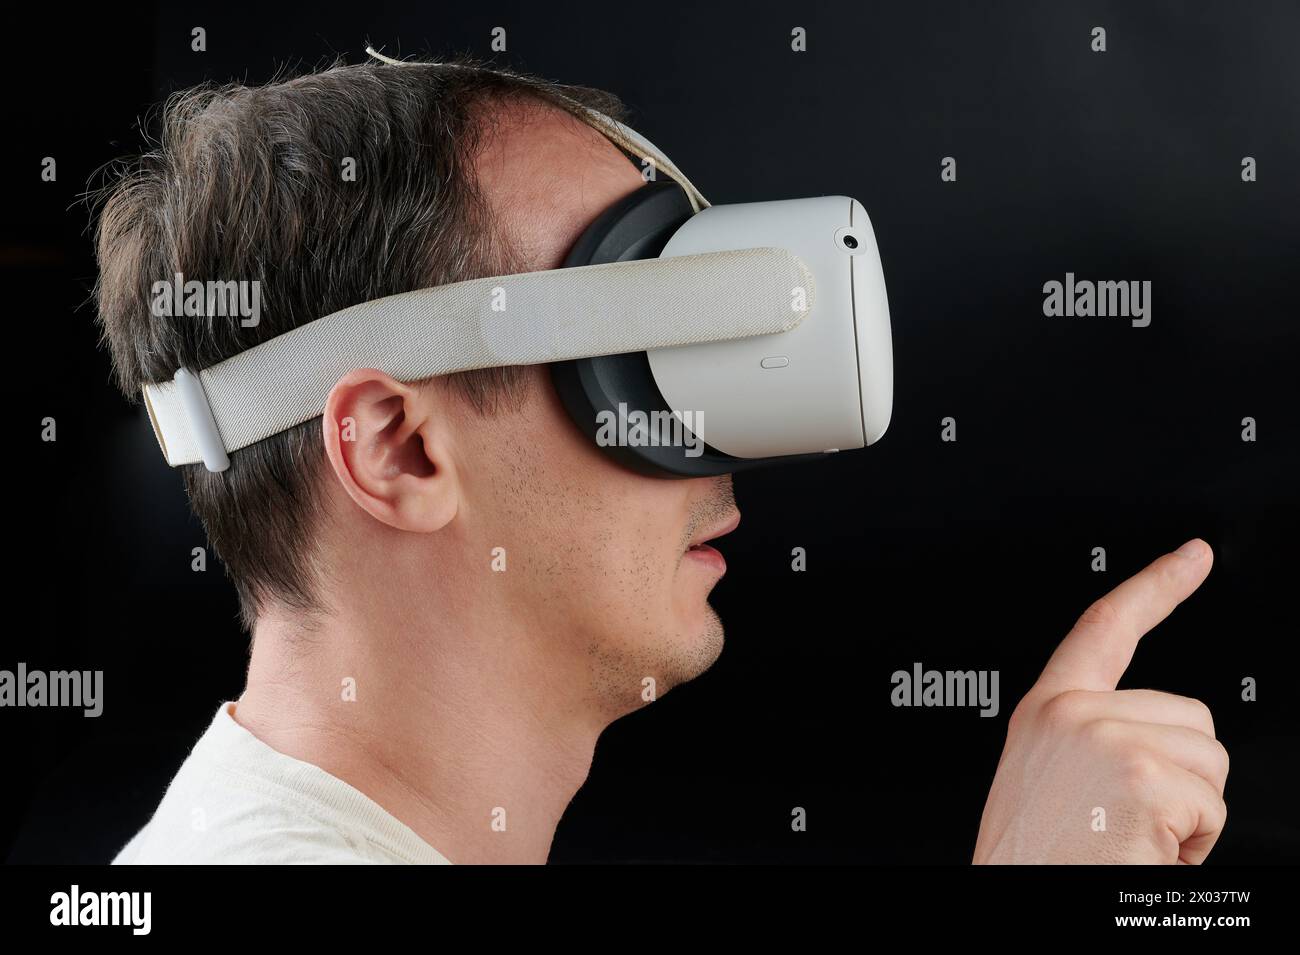 Personne utilisant des lunettes de réalité virtuelle vue latérale avec le client Banque D'Images